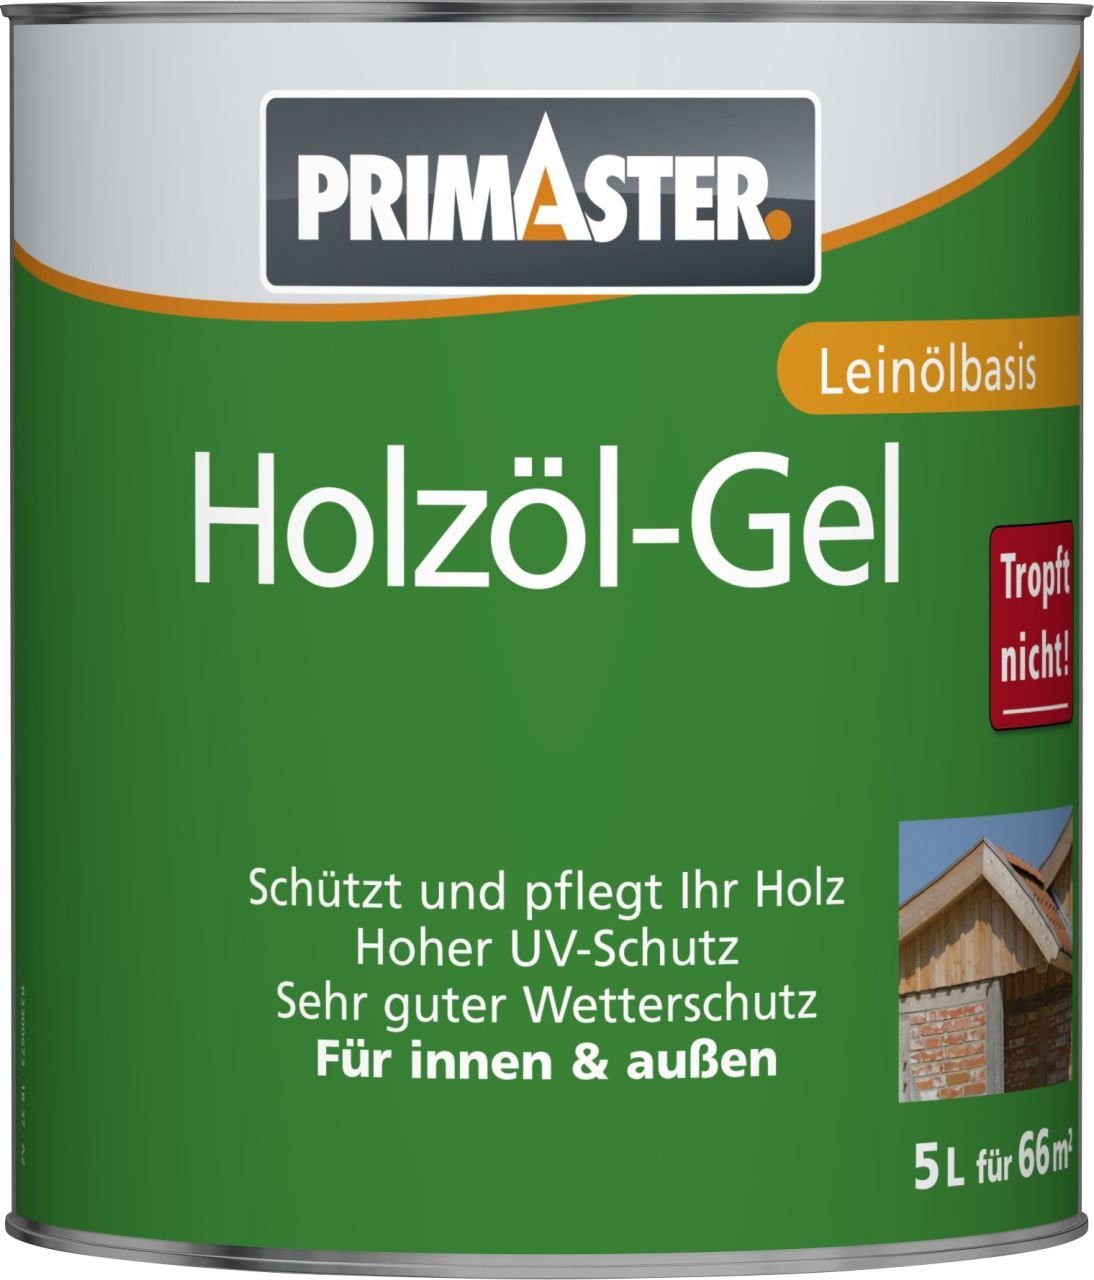 eiche Primaster Hartholzöl L Primaster Holzöl-Gel 5